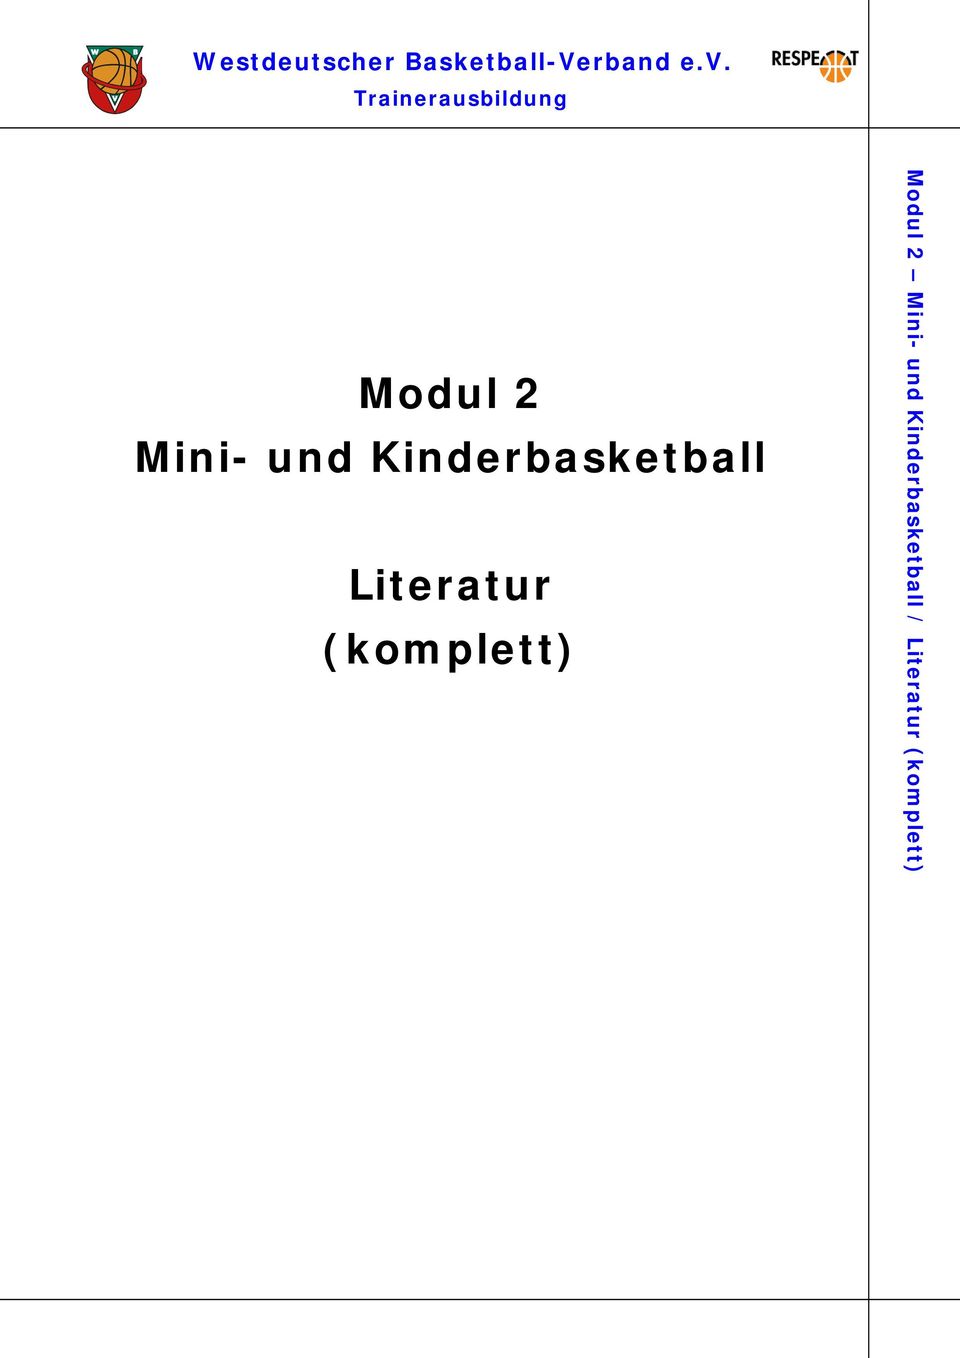 Literatur (komplett) Westdeutscher